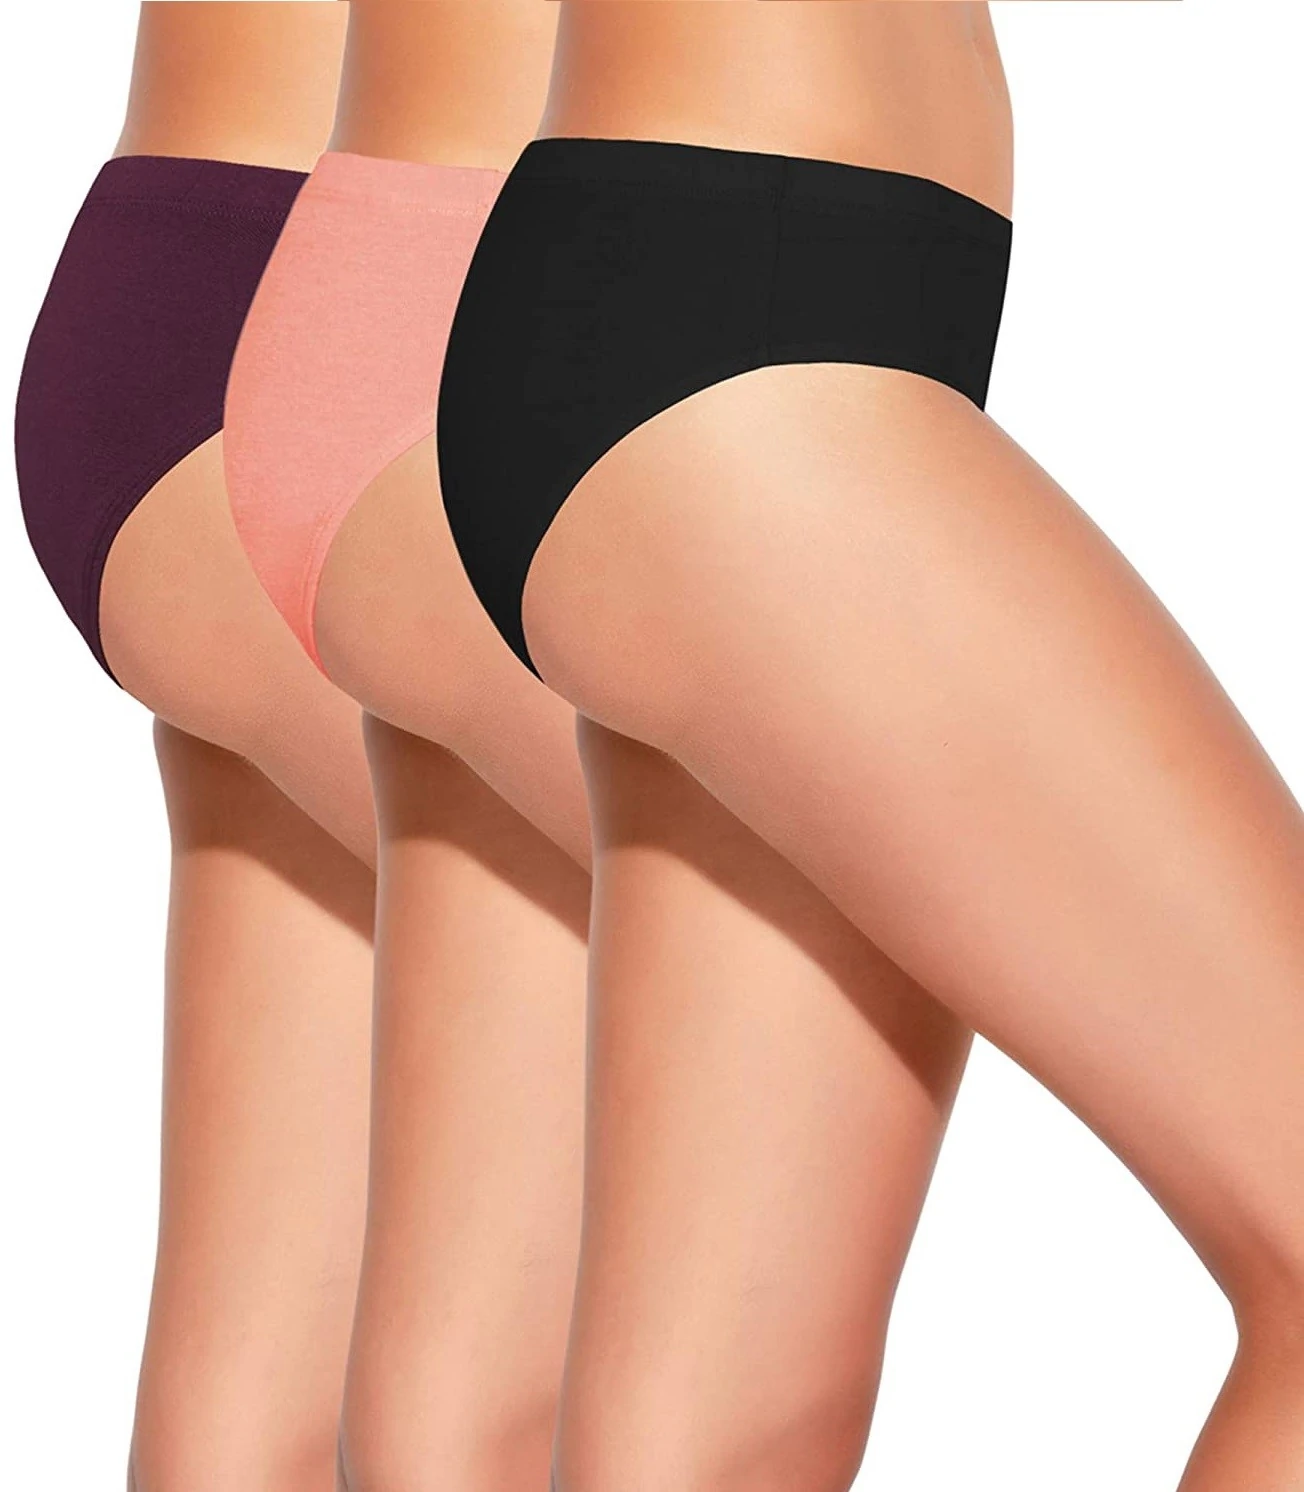 Enamor women's low waist style panty online--Eclipse